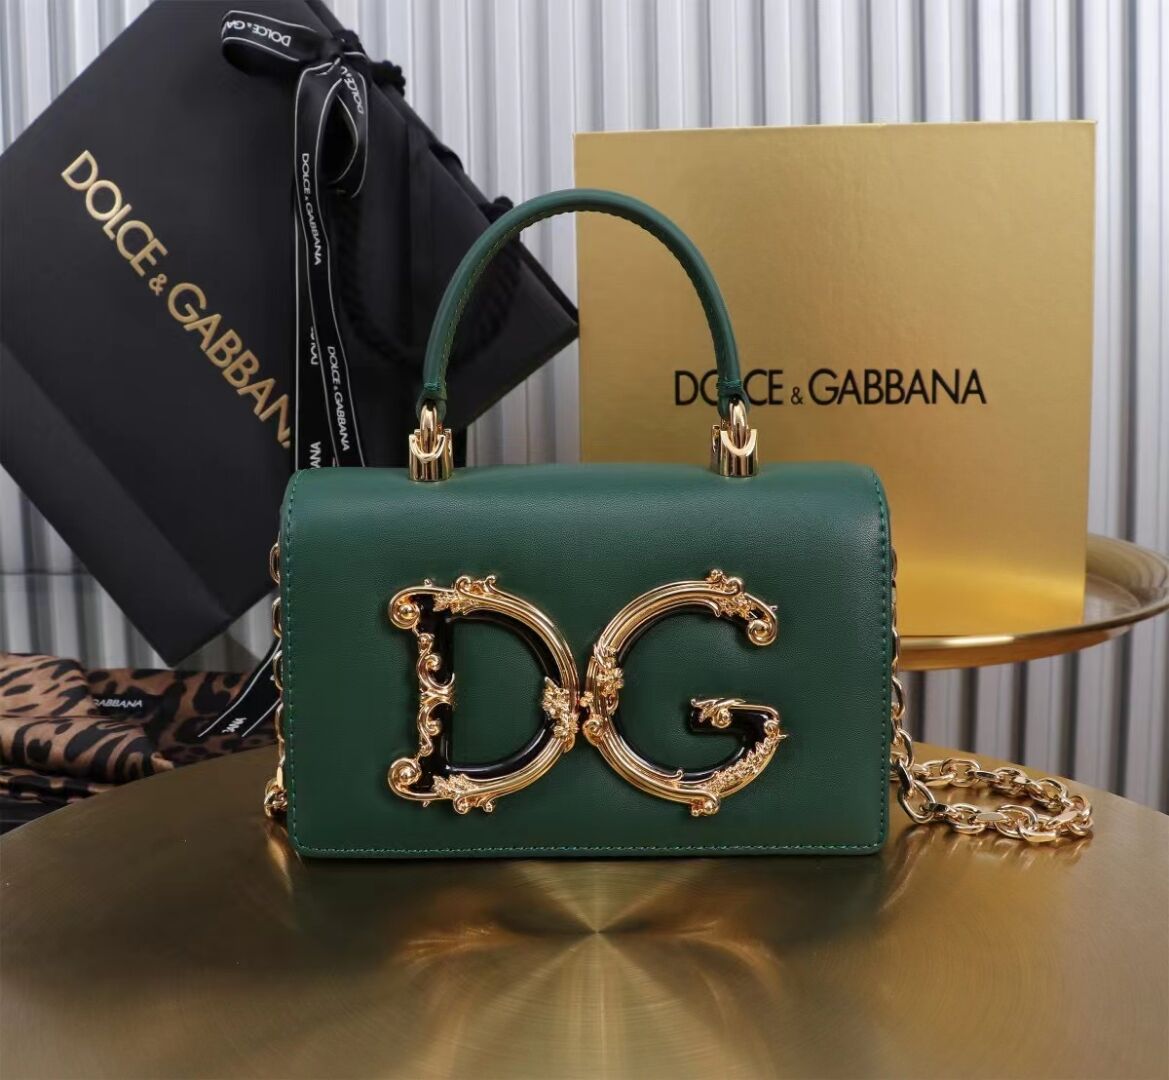 Dolce & Gabbana leather Shoulder Bag G6504 green